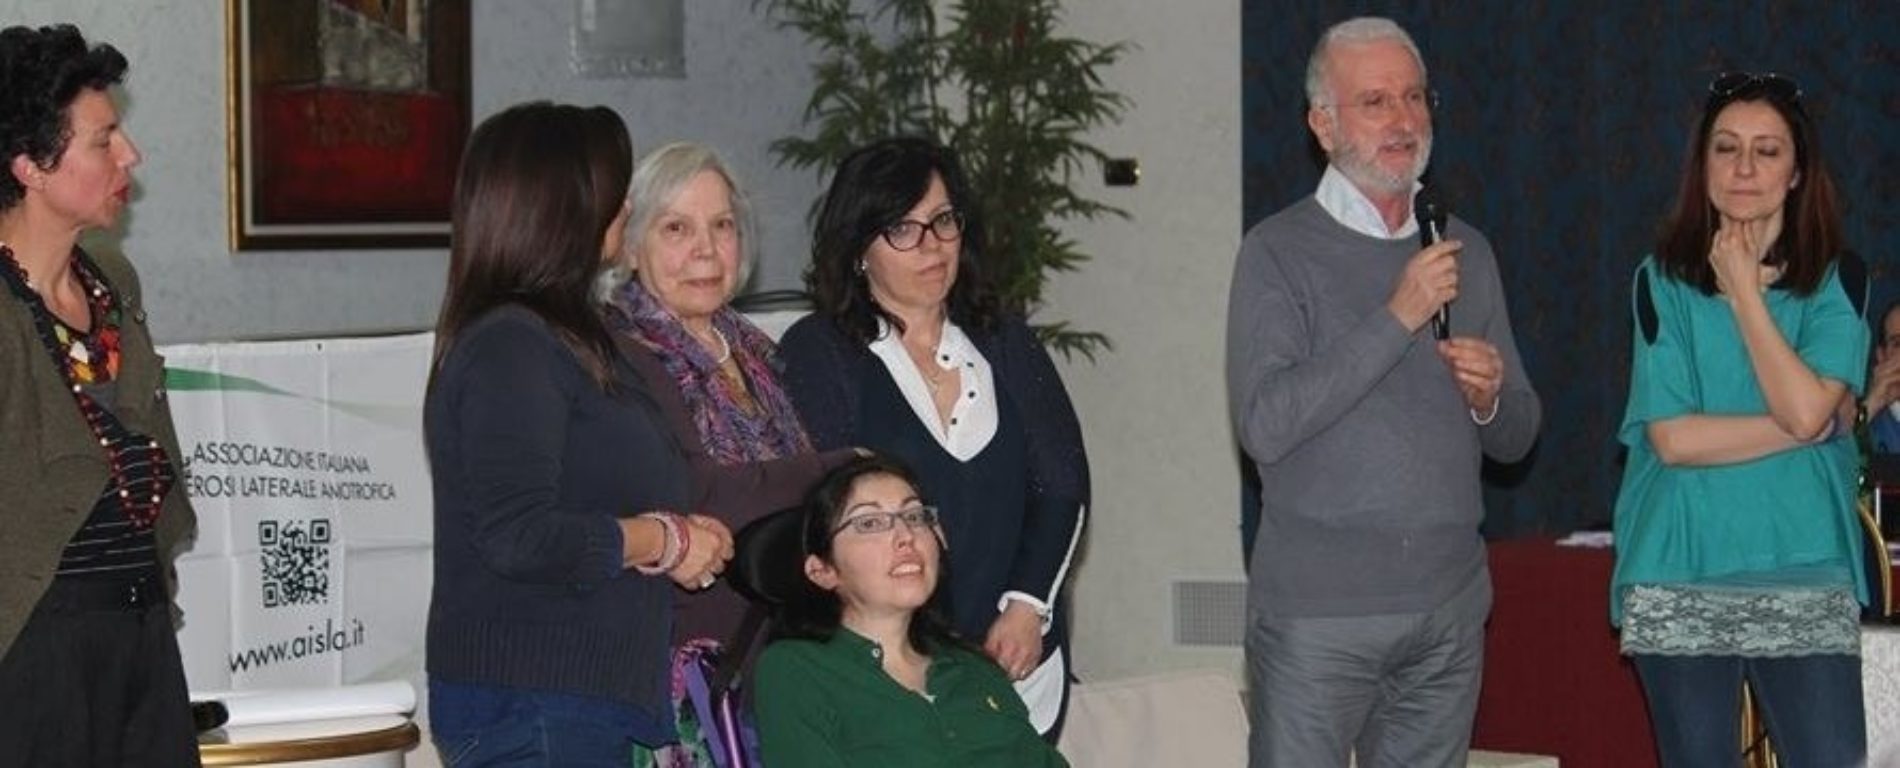 Il presidente nazionale Aisla, Massimo Mauro ad Enna: “ Più apertura per generare consapevolezza sulla Sla e sui problemi ad essi connessi”